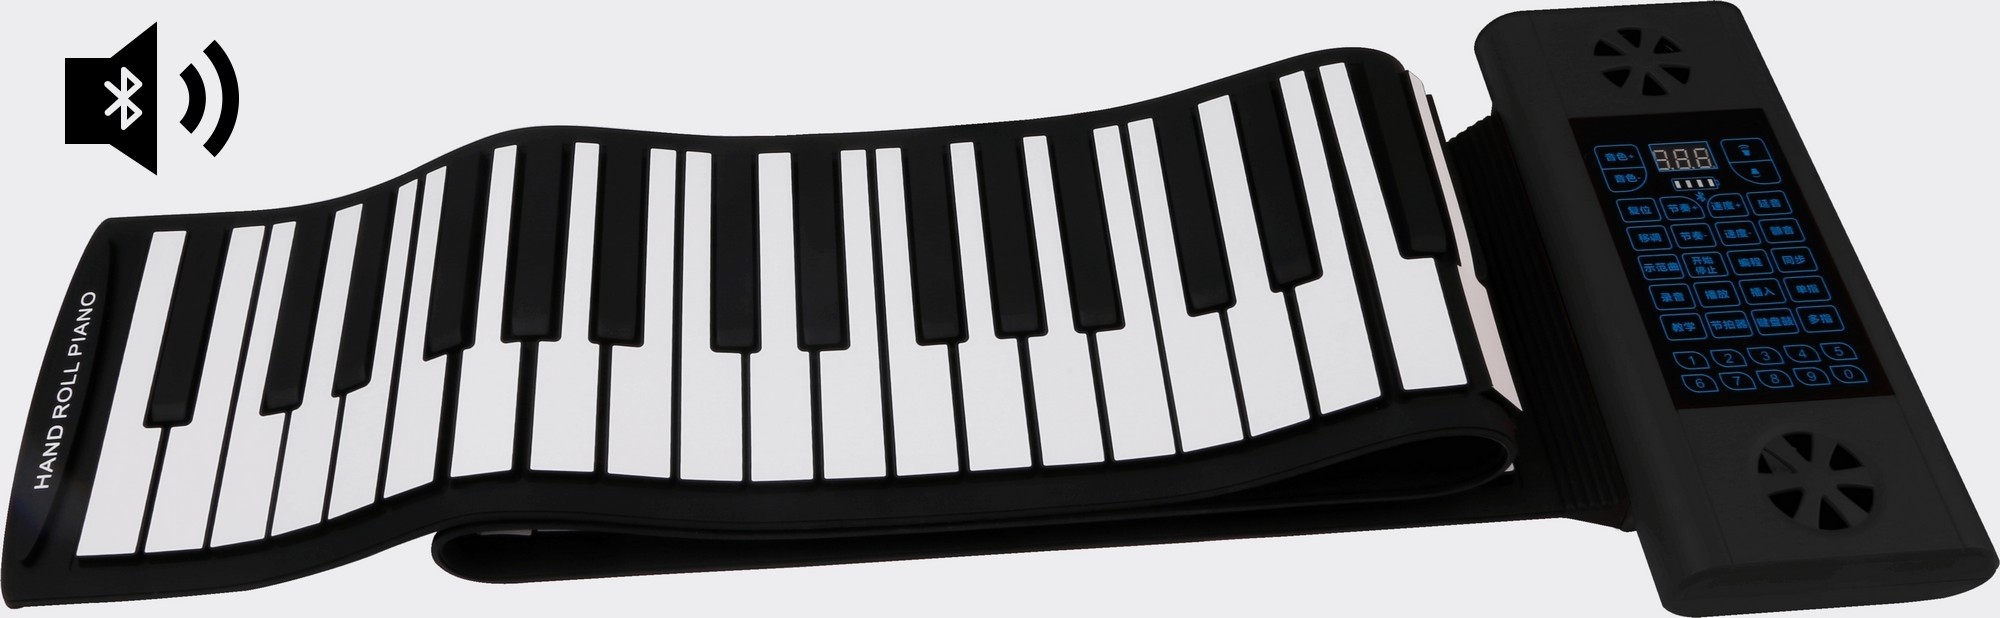 Cuộn bàn phím đệm silicon piano với 88 phím + loa Bluetooth | Cool Mania